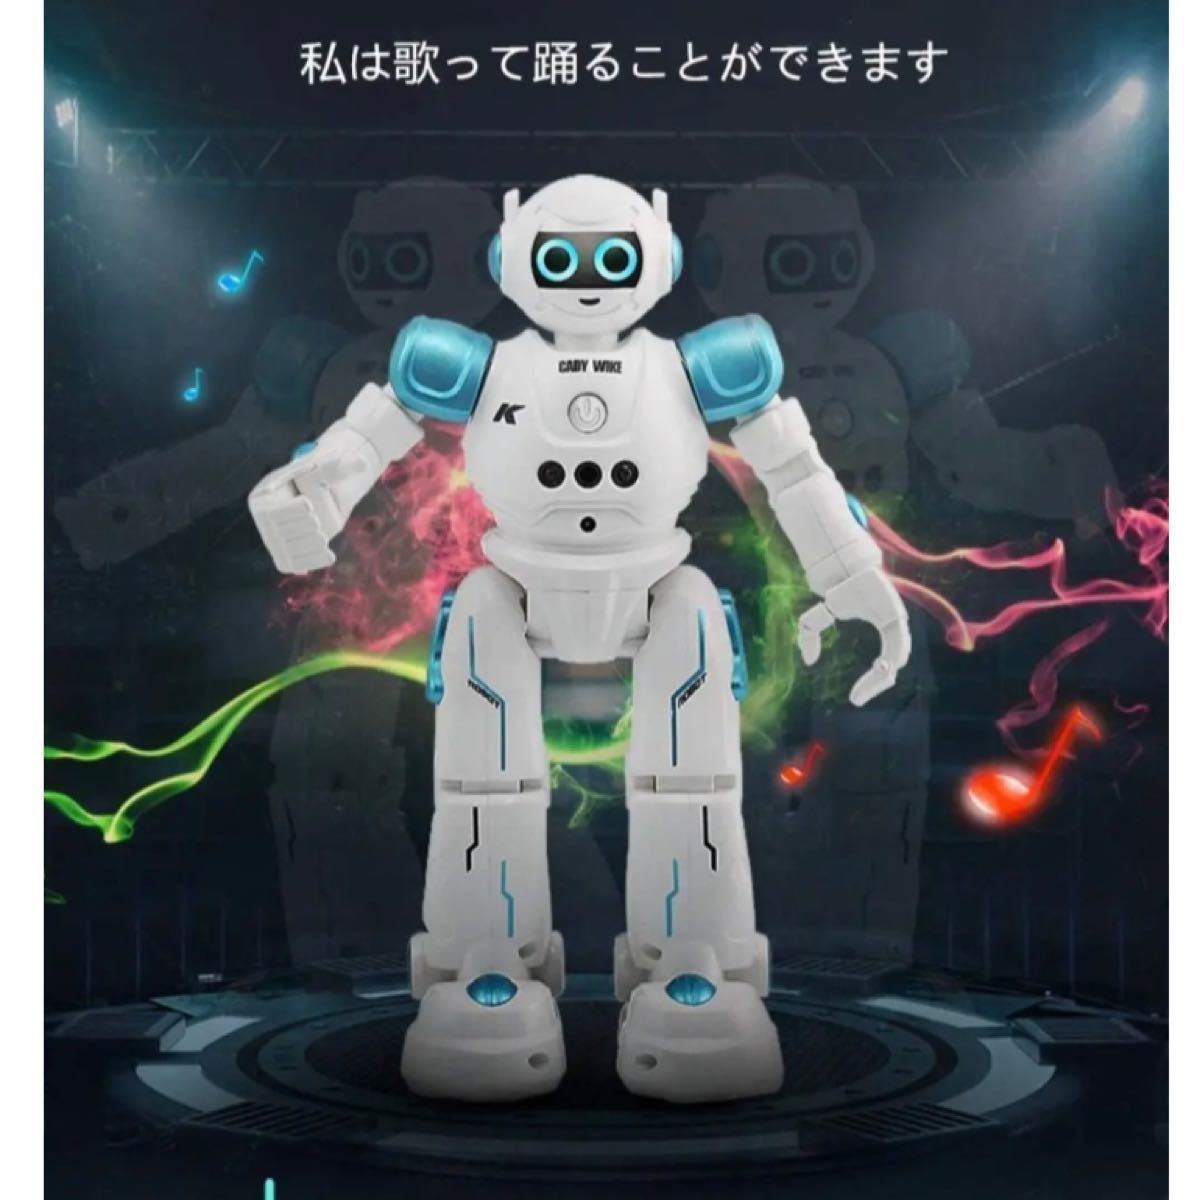 多機能ロボットおもちゃ ラジコンロボット 手振り制御 歌と踊りをする (青)